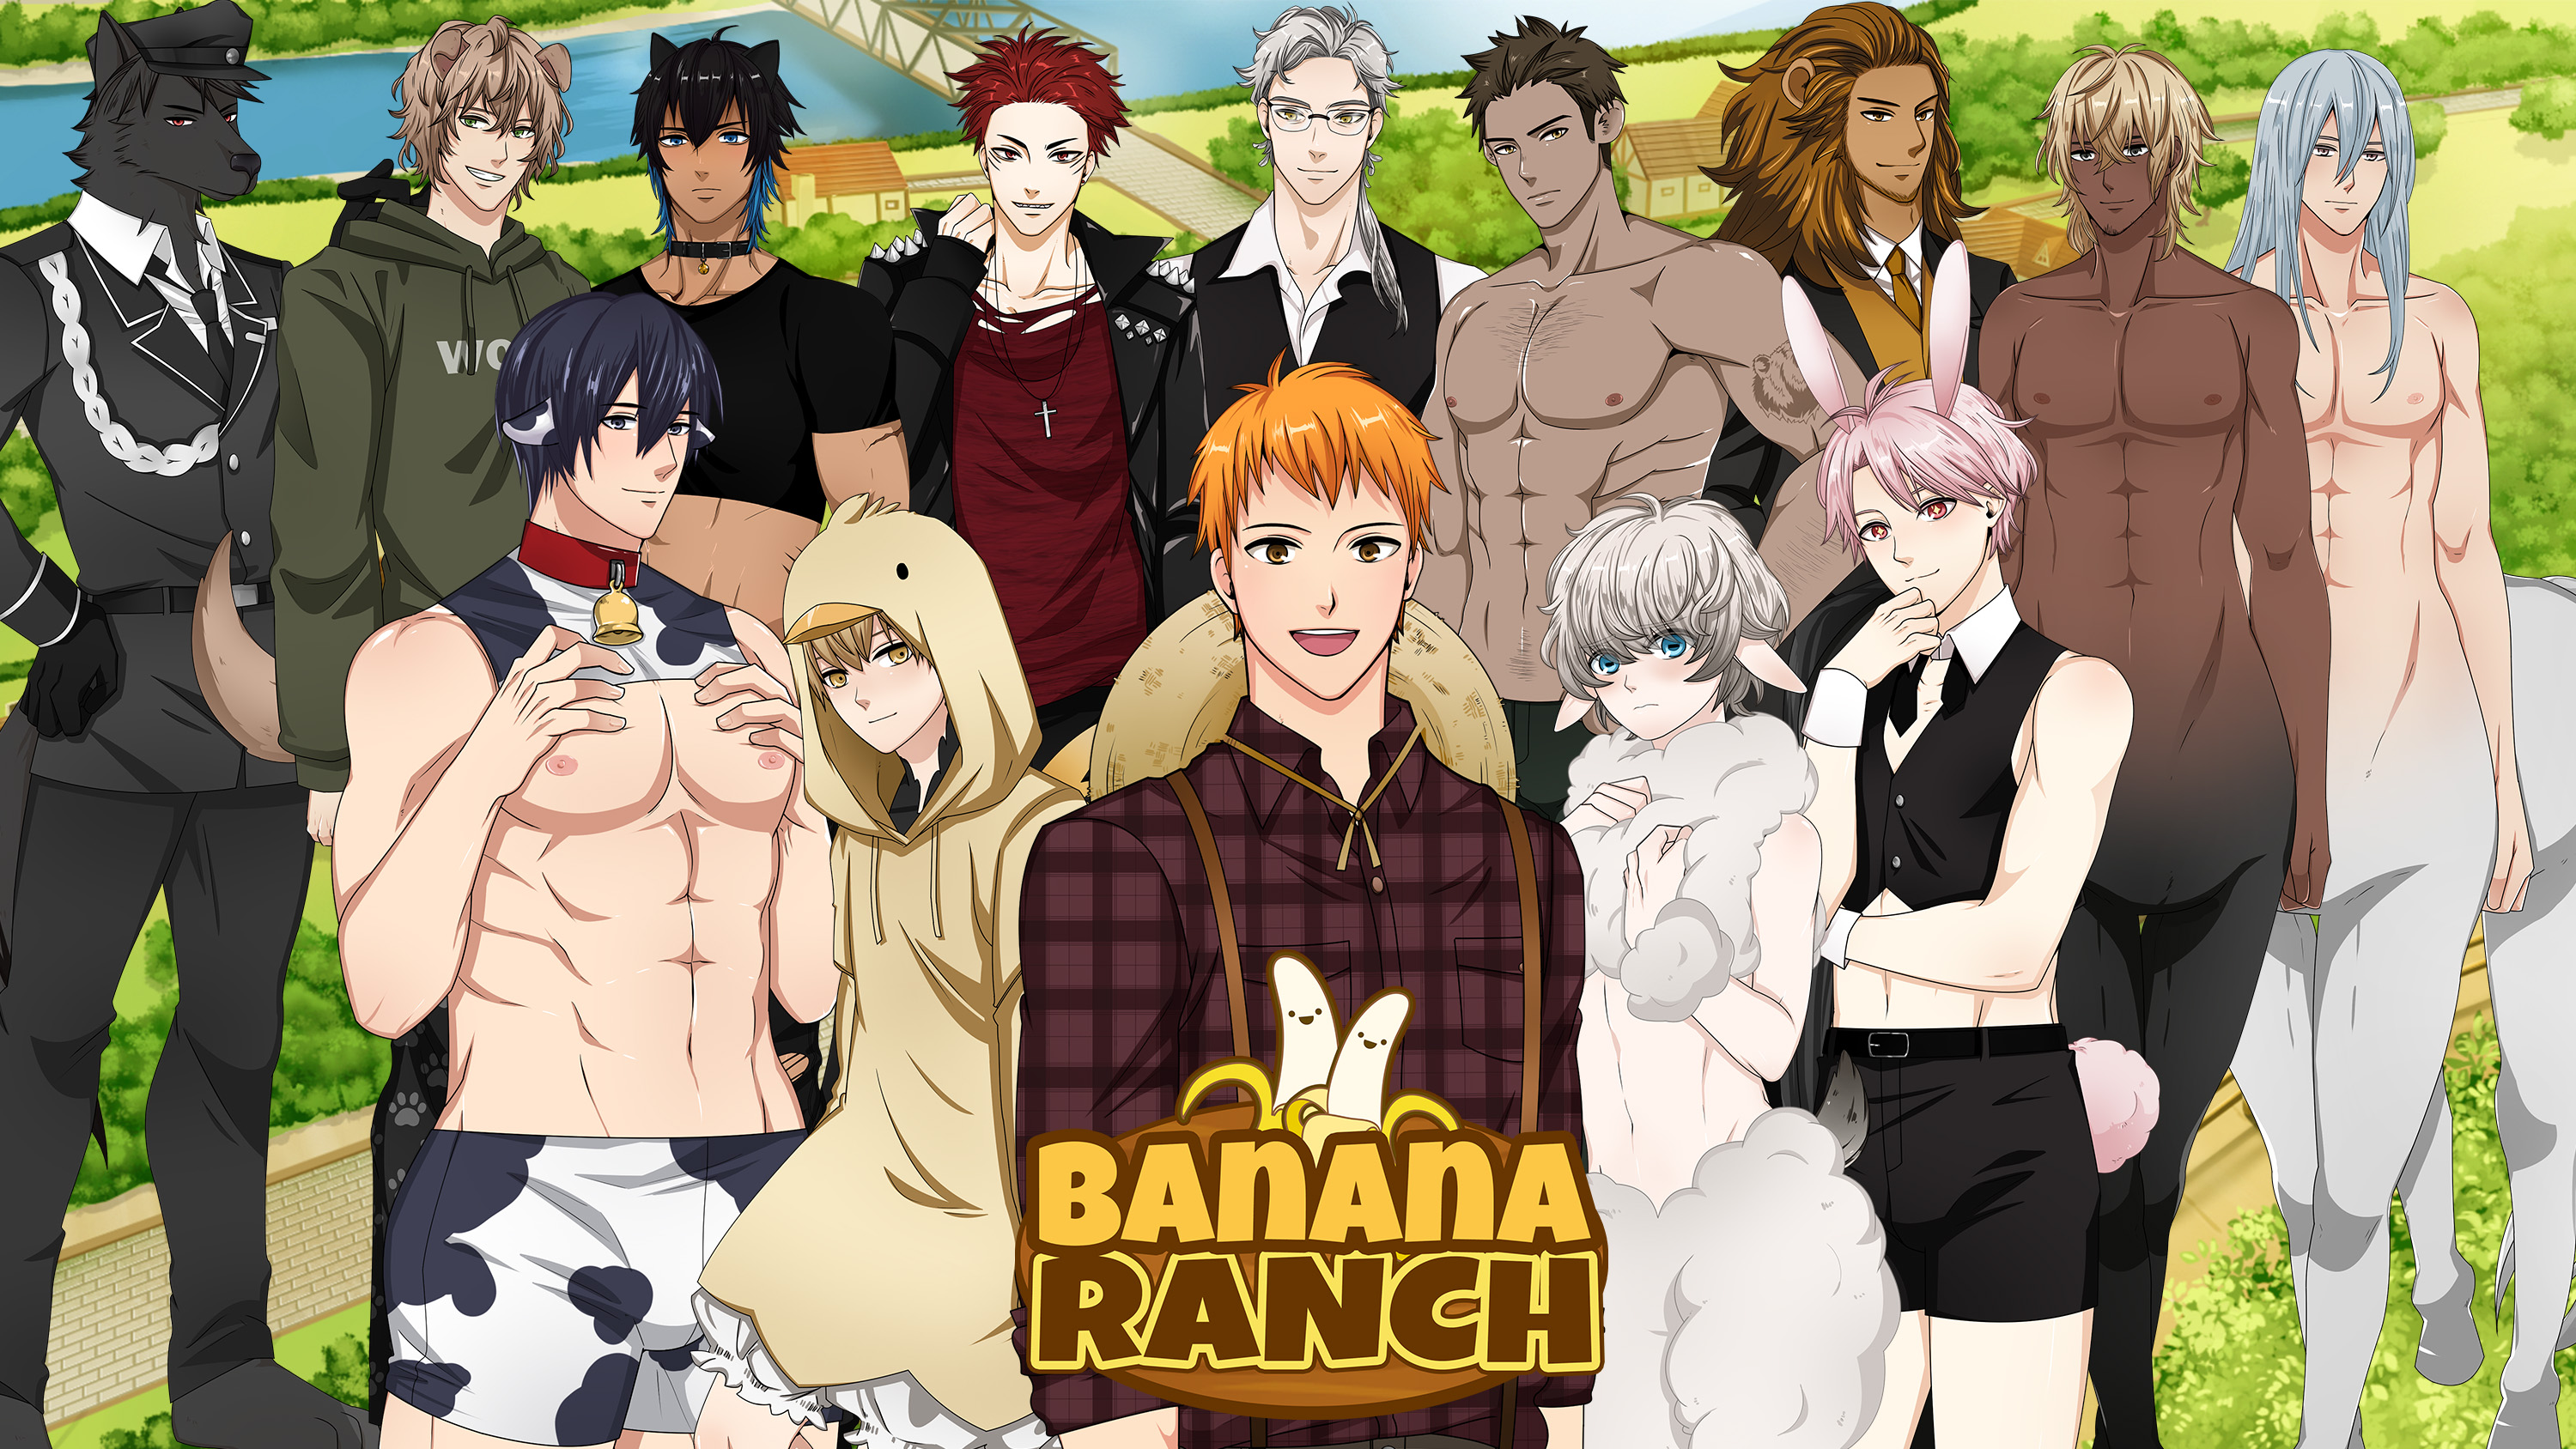 Banana ranch game